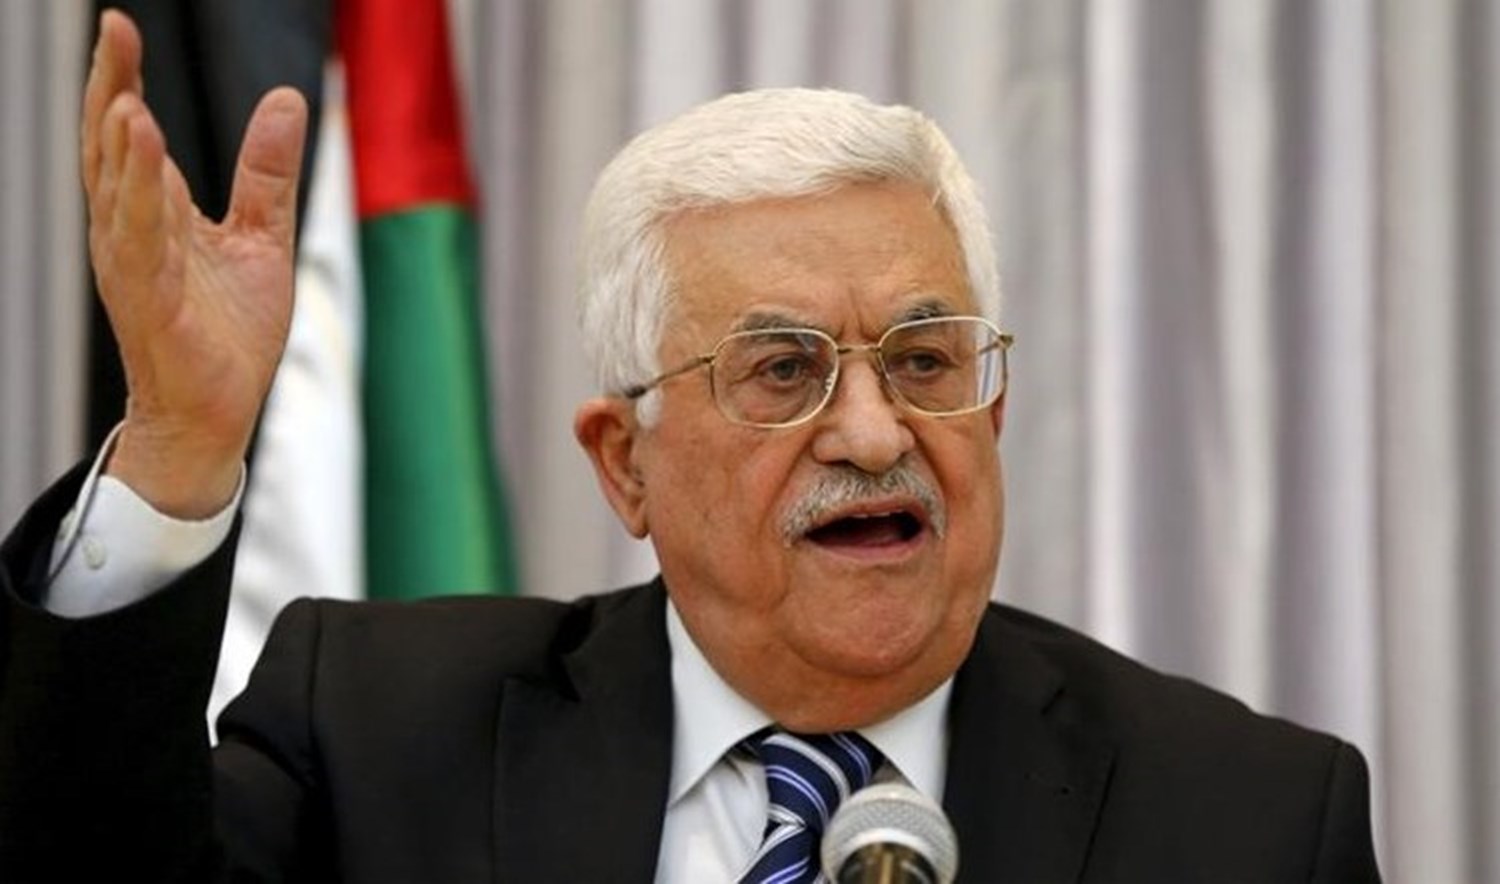 dirigente-palestino-reclama-a-israel-jerusalen-este-y-liberar-presos